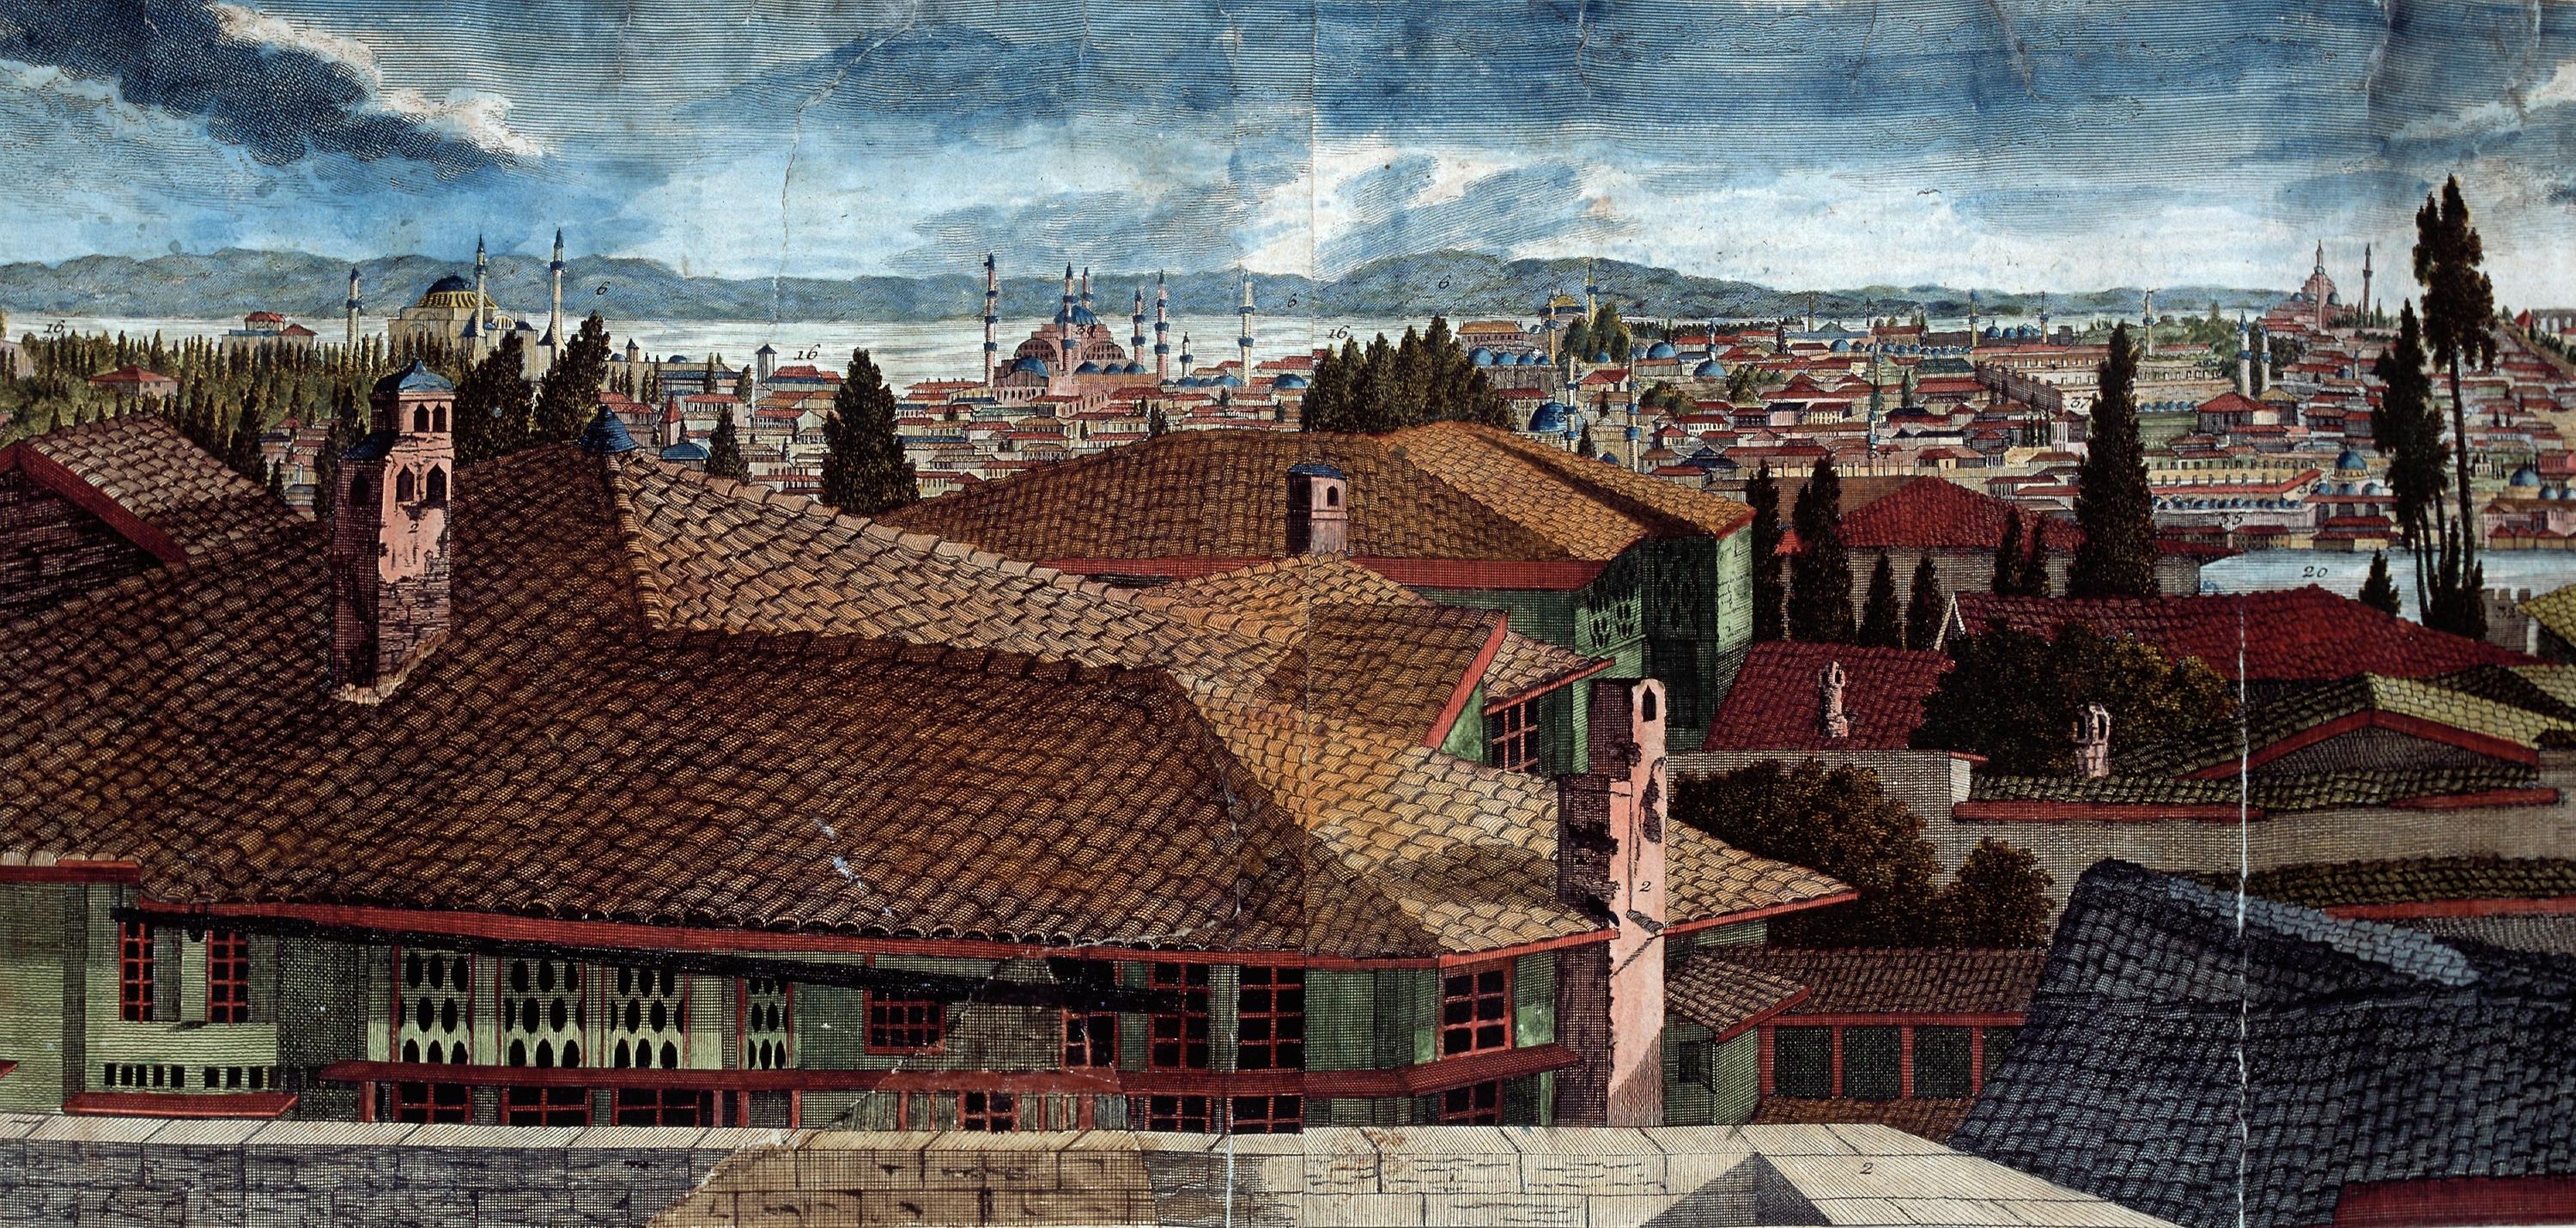 Färglagd vy över Konstantinopel. Närmast betraktaren flera husfasader, tak och trädtoppar, längre bort syns flera torn framför vatten och berg.